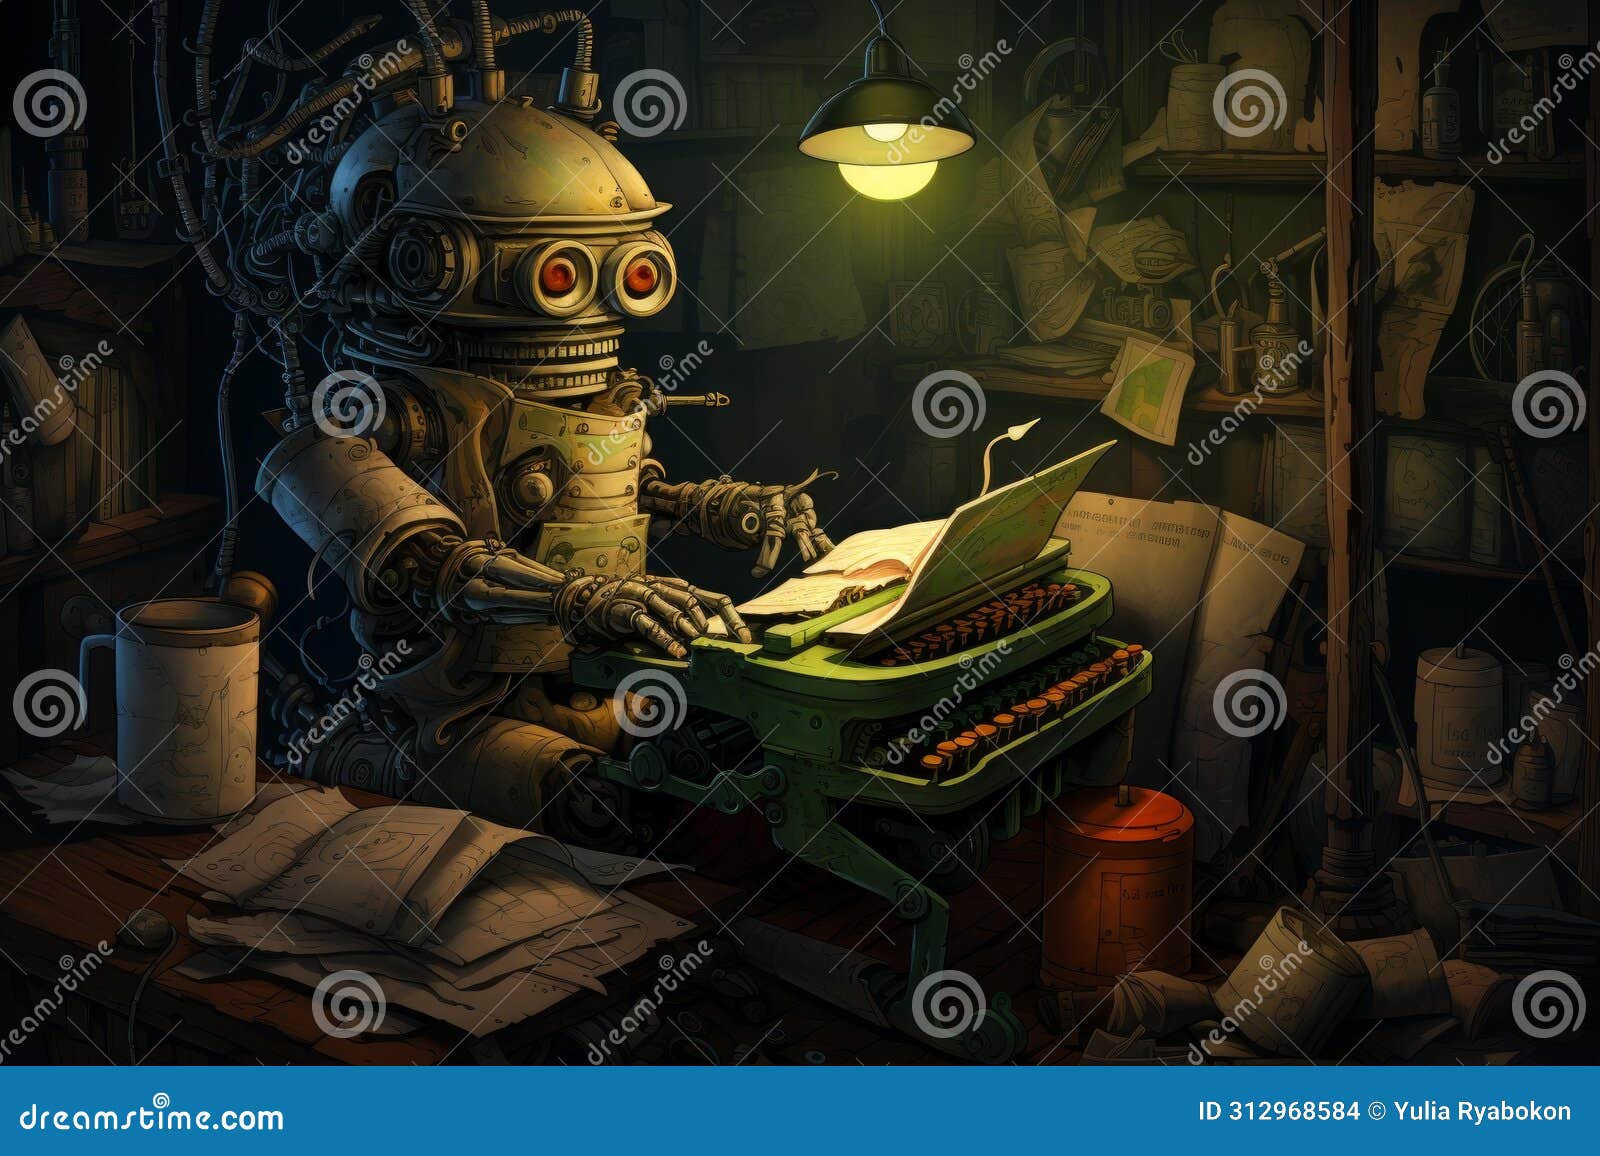 imaginative medieval robot redactor working at typewriter. generate ai